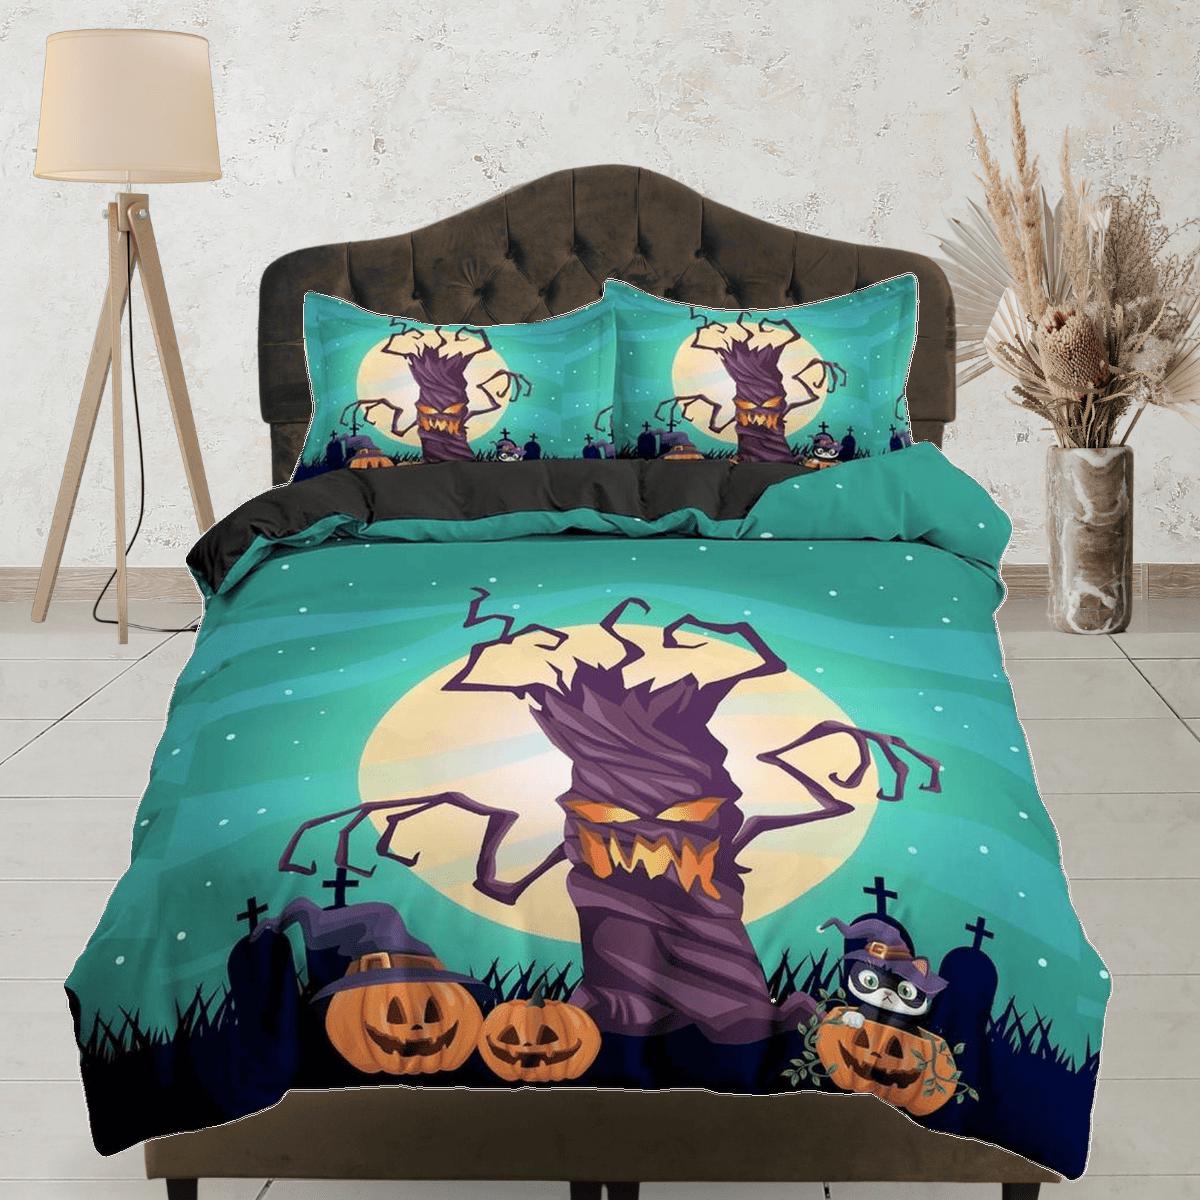 daintyduvet Full moon spooky tree and pumpkin halloween full bedding & pillowcase, duvet cover set dorm bedding, nursery toddler bedding, halloween gift